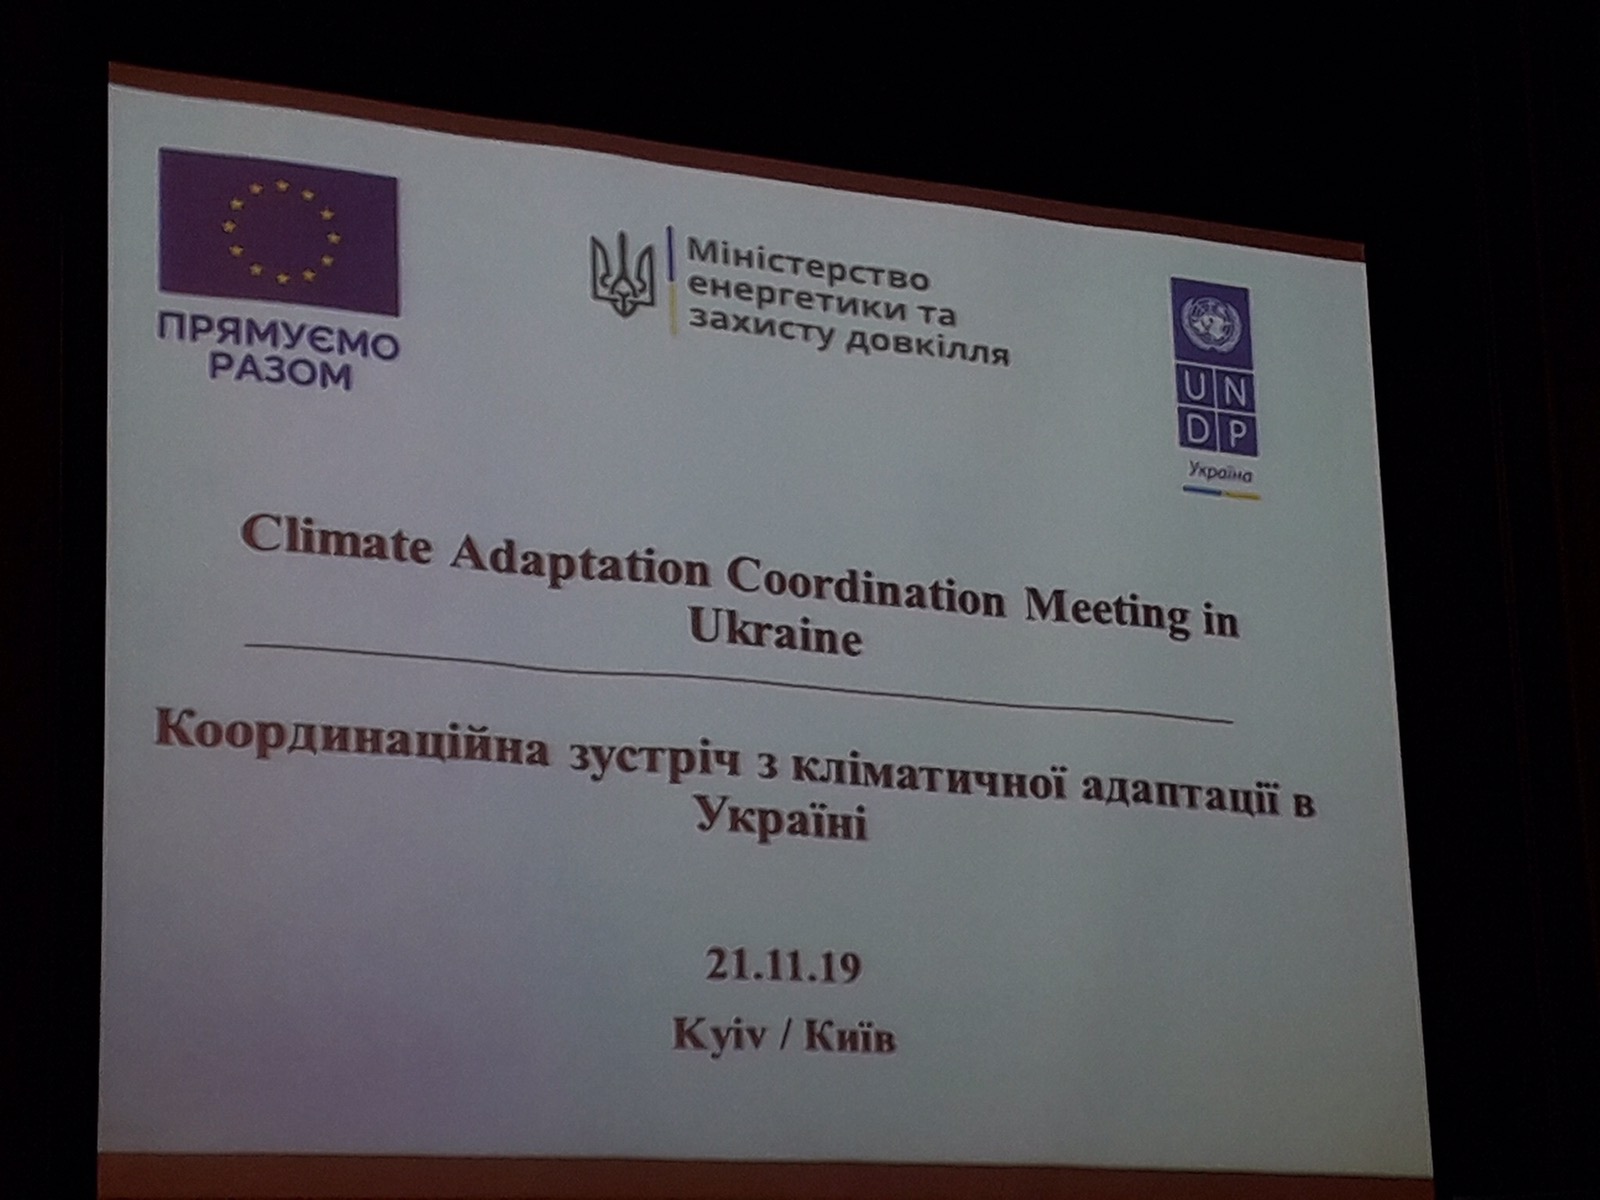 koordination meeting climate